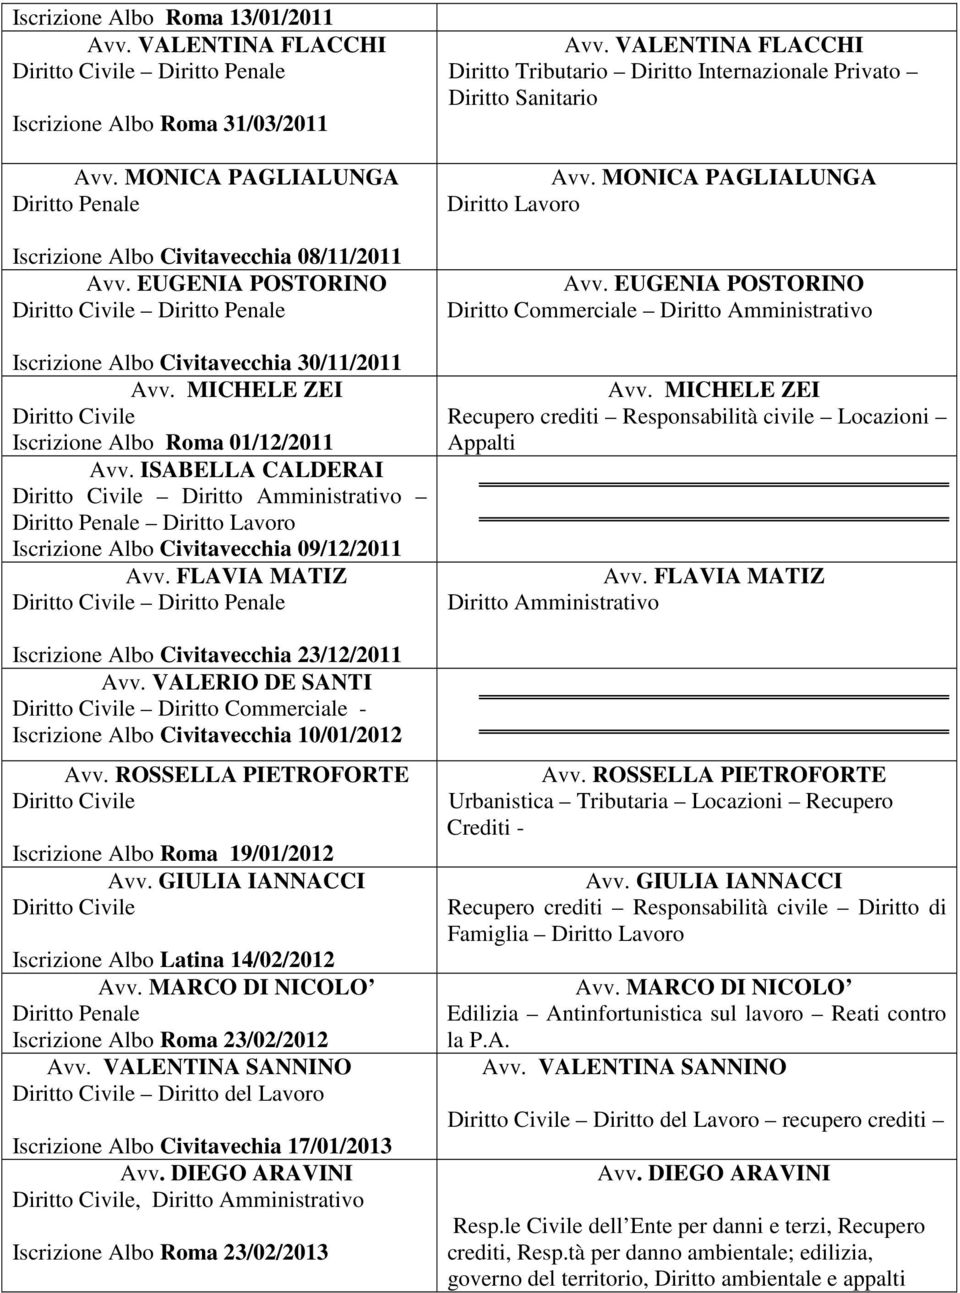 FLAVIA MATIZ Iscrizione Albo Civitavecchia 23/12/2011 Avv. VALERIO DE SANTI Diritto Commerciale - Iscrizione Albo Civitavecchia 10/01/2012 Avv.